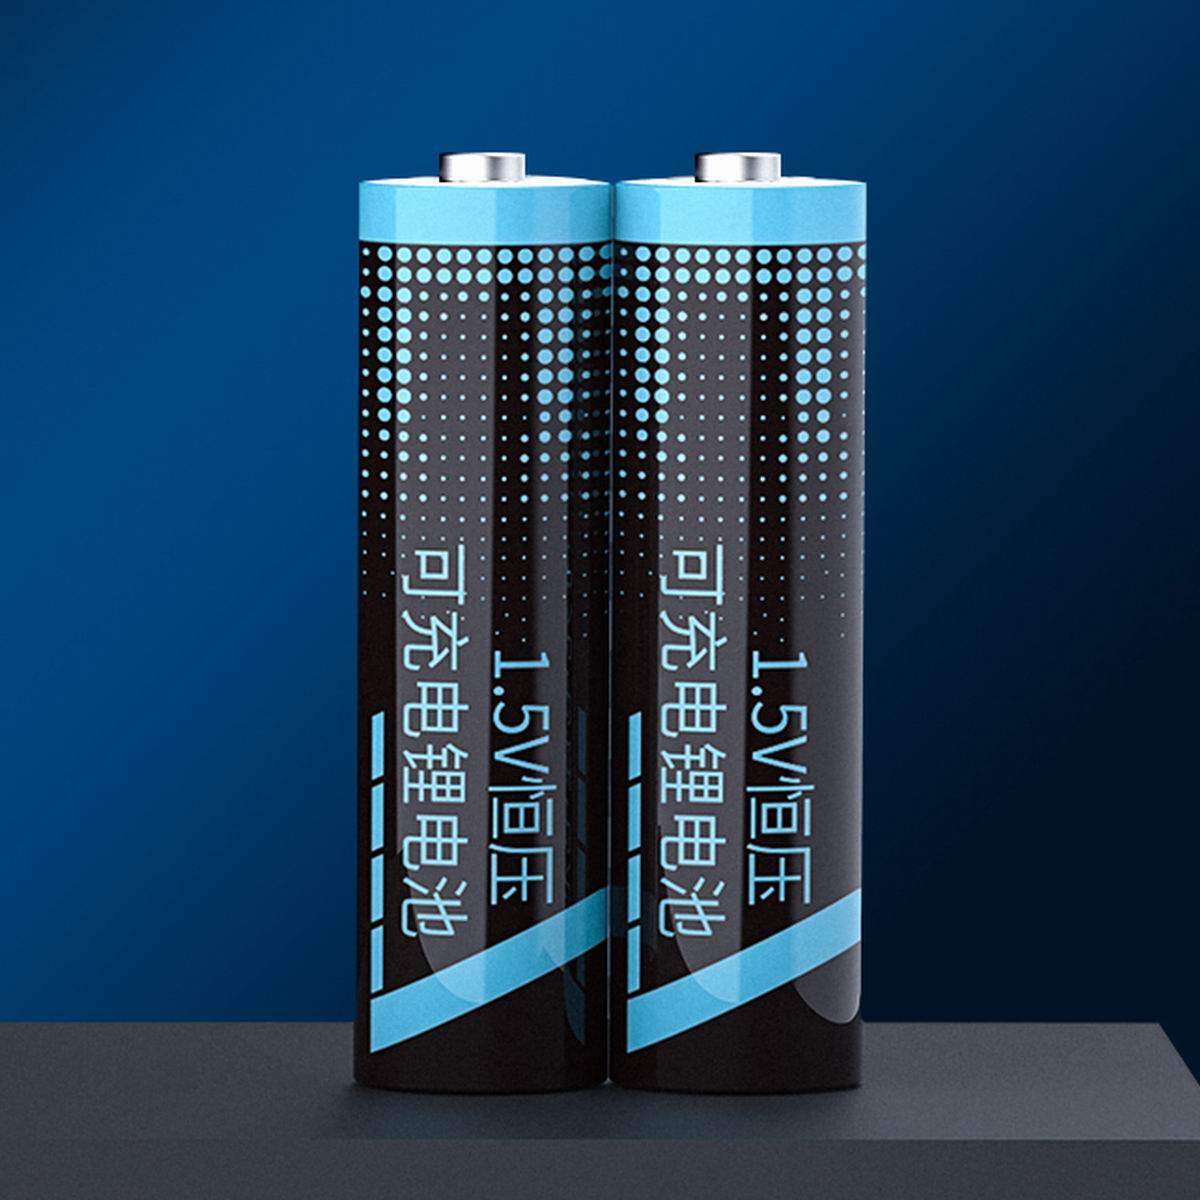 京东自主品牌推出新型5号AA充电锂电池，1.5V输出3000mWh超高电量